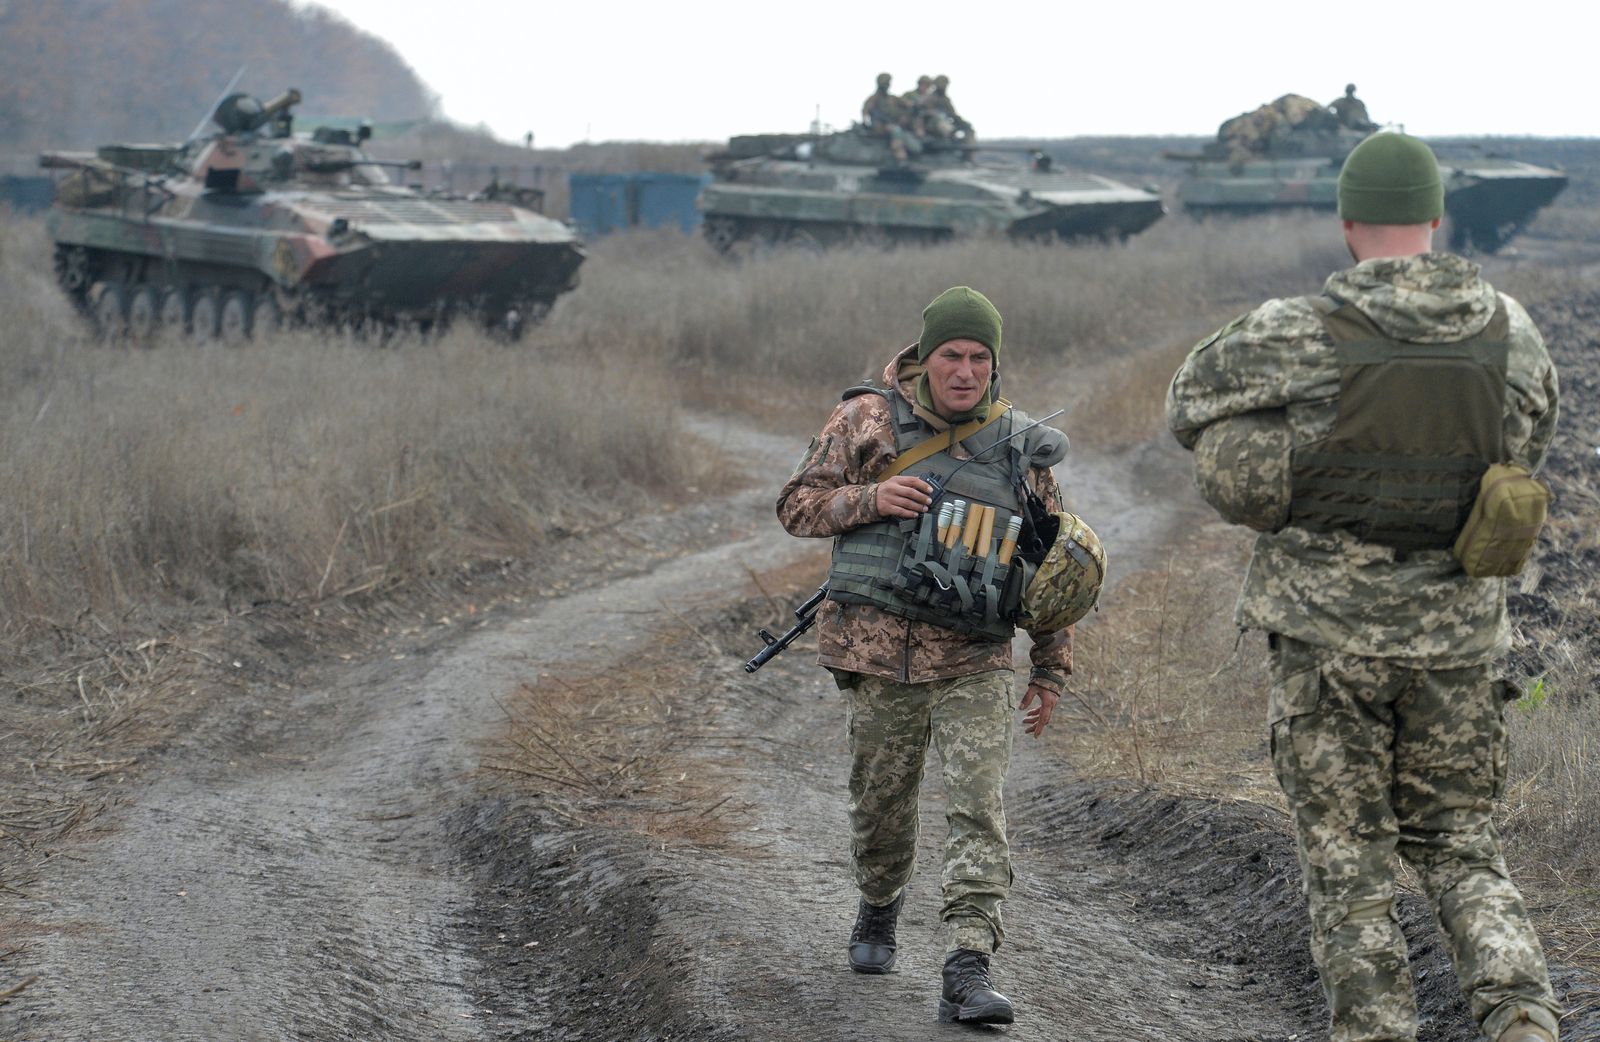 جنود أوكرانيون يستعدون لركوب ناقلات جند مدرعة (APC) في مستوطنة Bohdanivka، التي تقع في منطقة فض الاشتباك بالقرب من خط التماس مع المتمردين الانفصاليين المدعومين روسياً في دونيتسك. أوكرانيا  في 9 نوفمبر2019.  - REUTERS